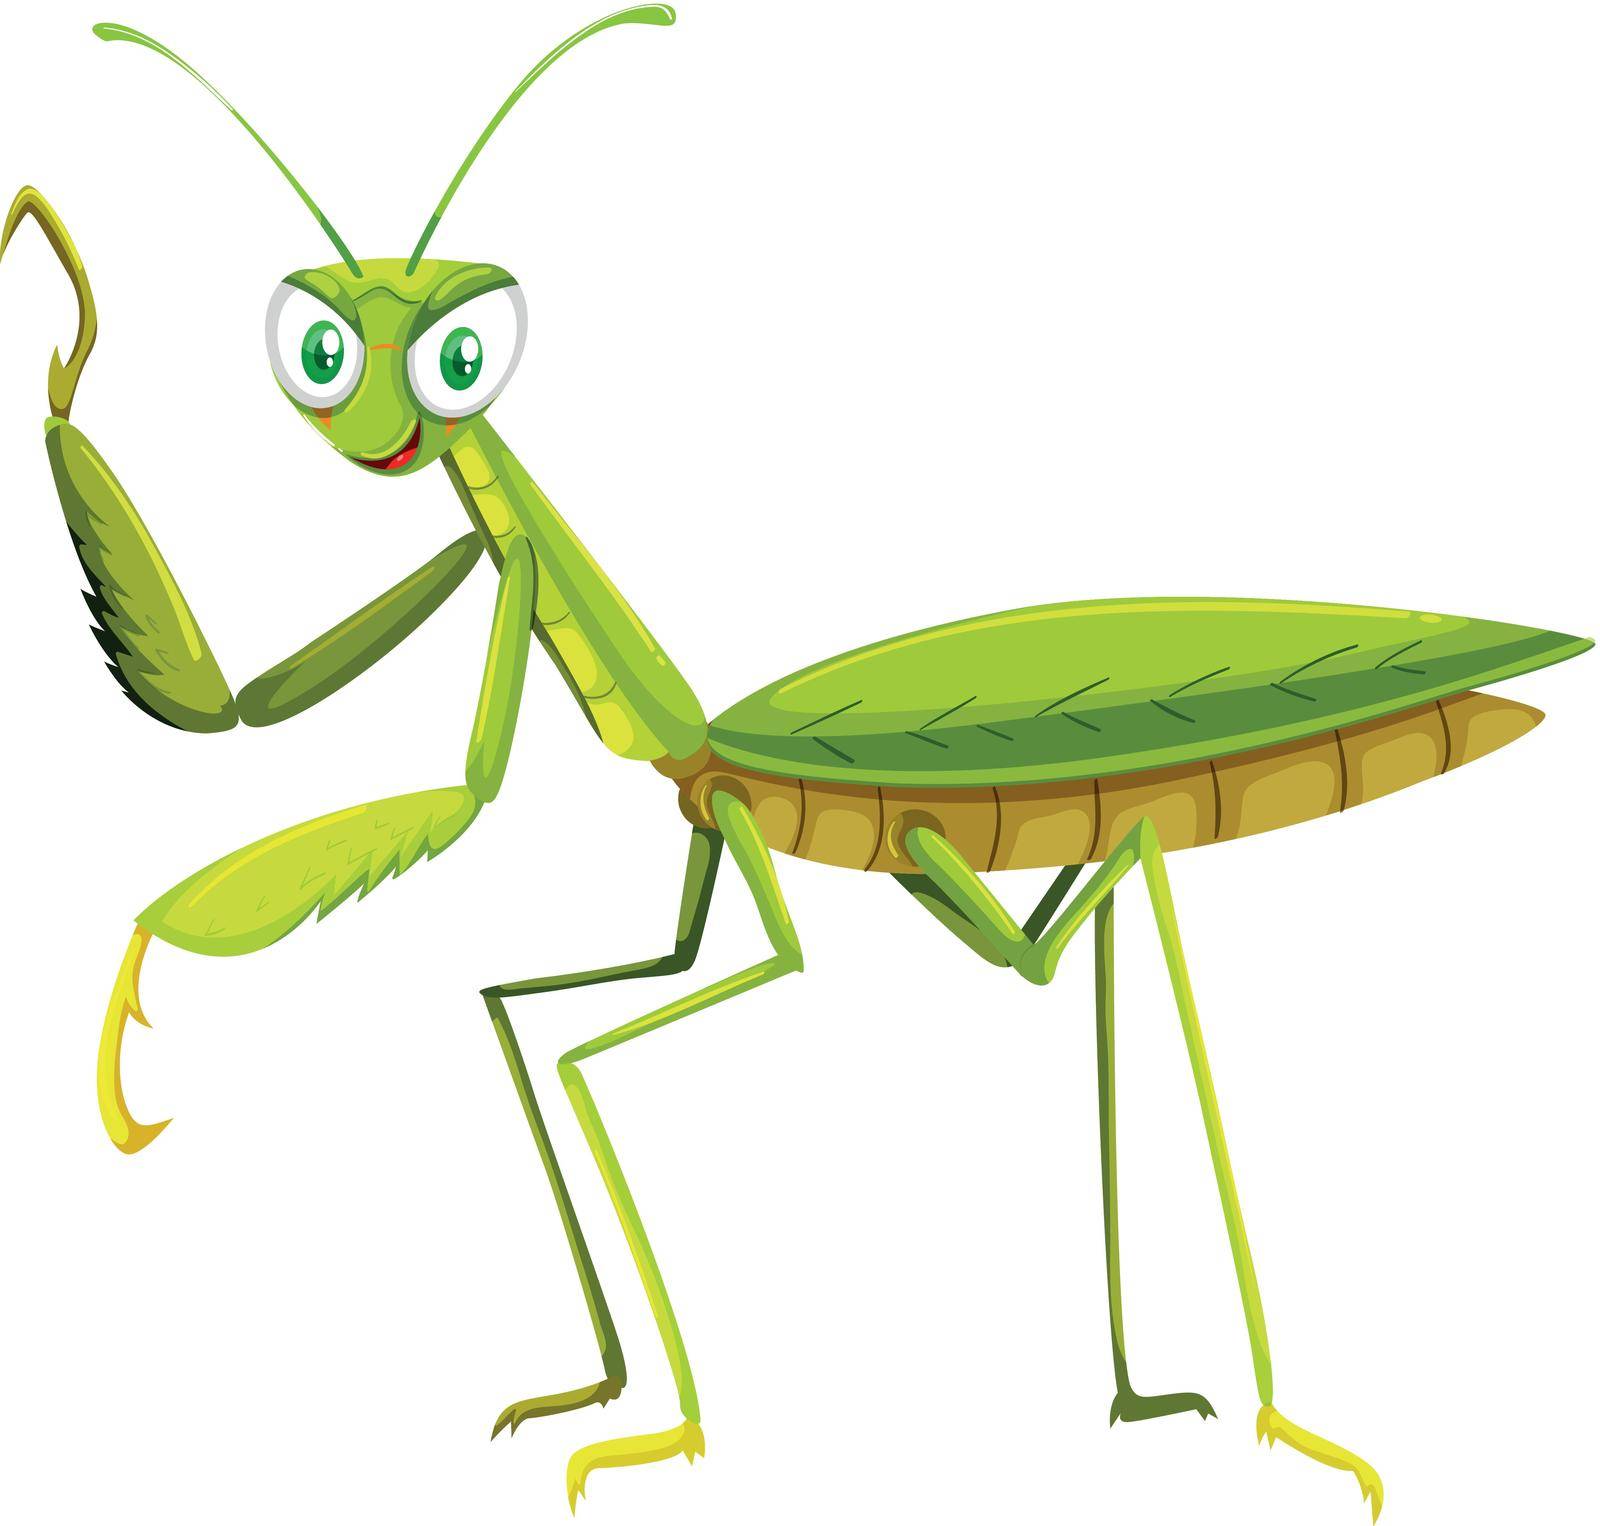 Green grasshopper on white background illustration